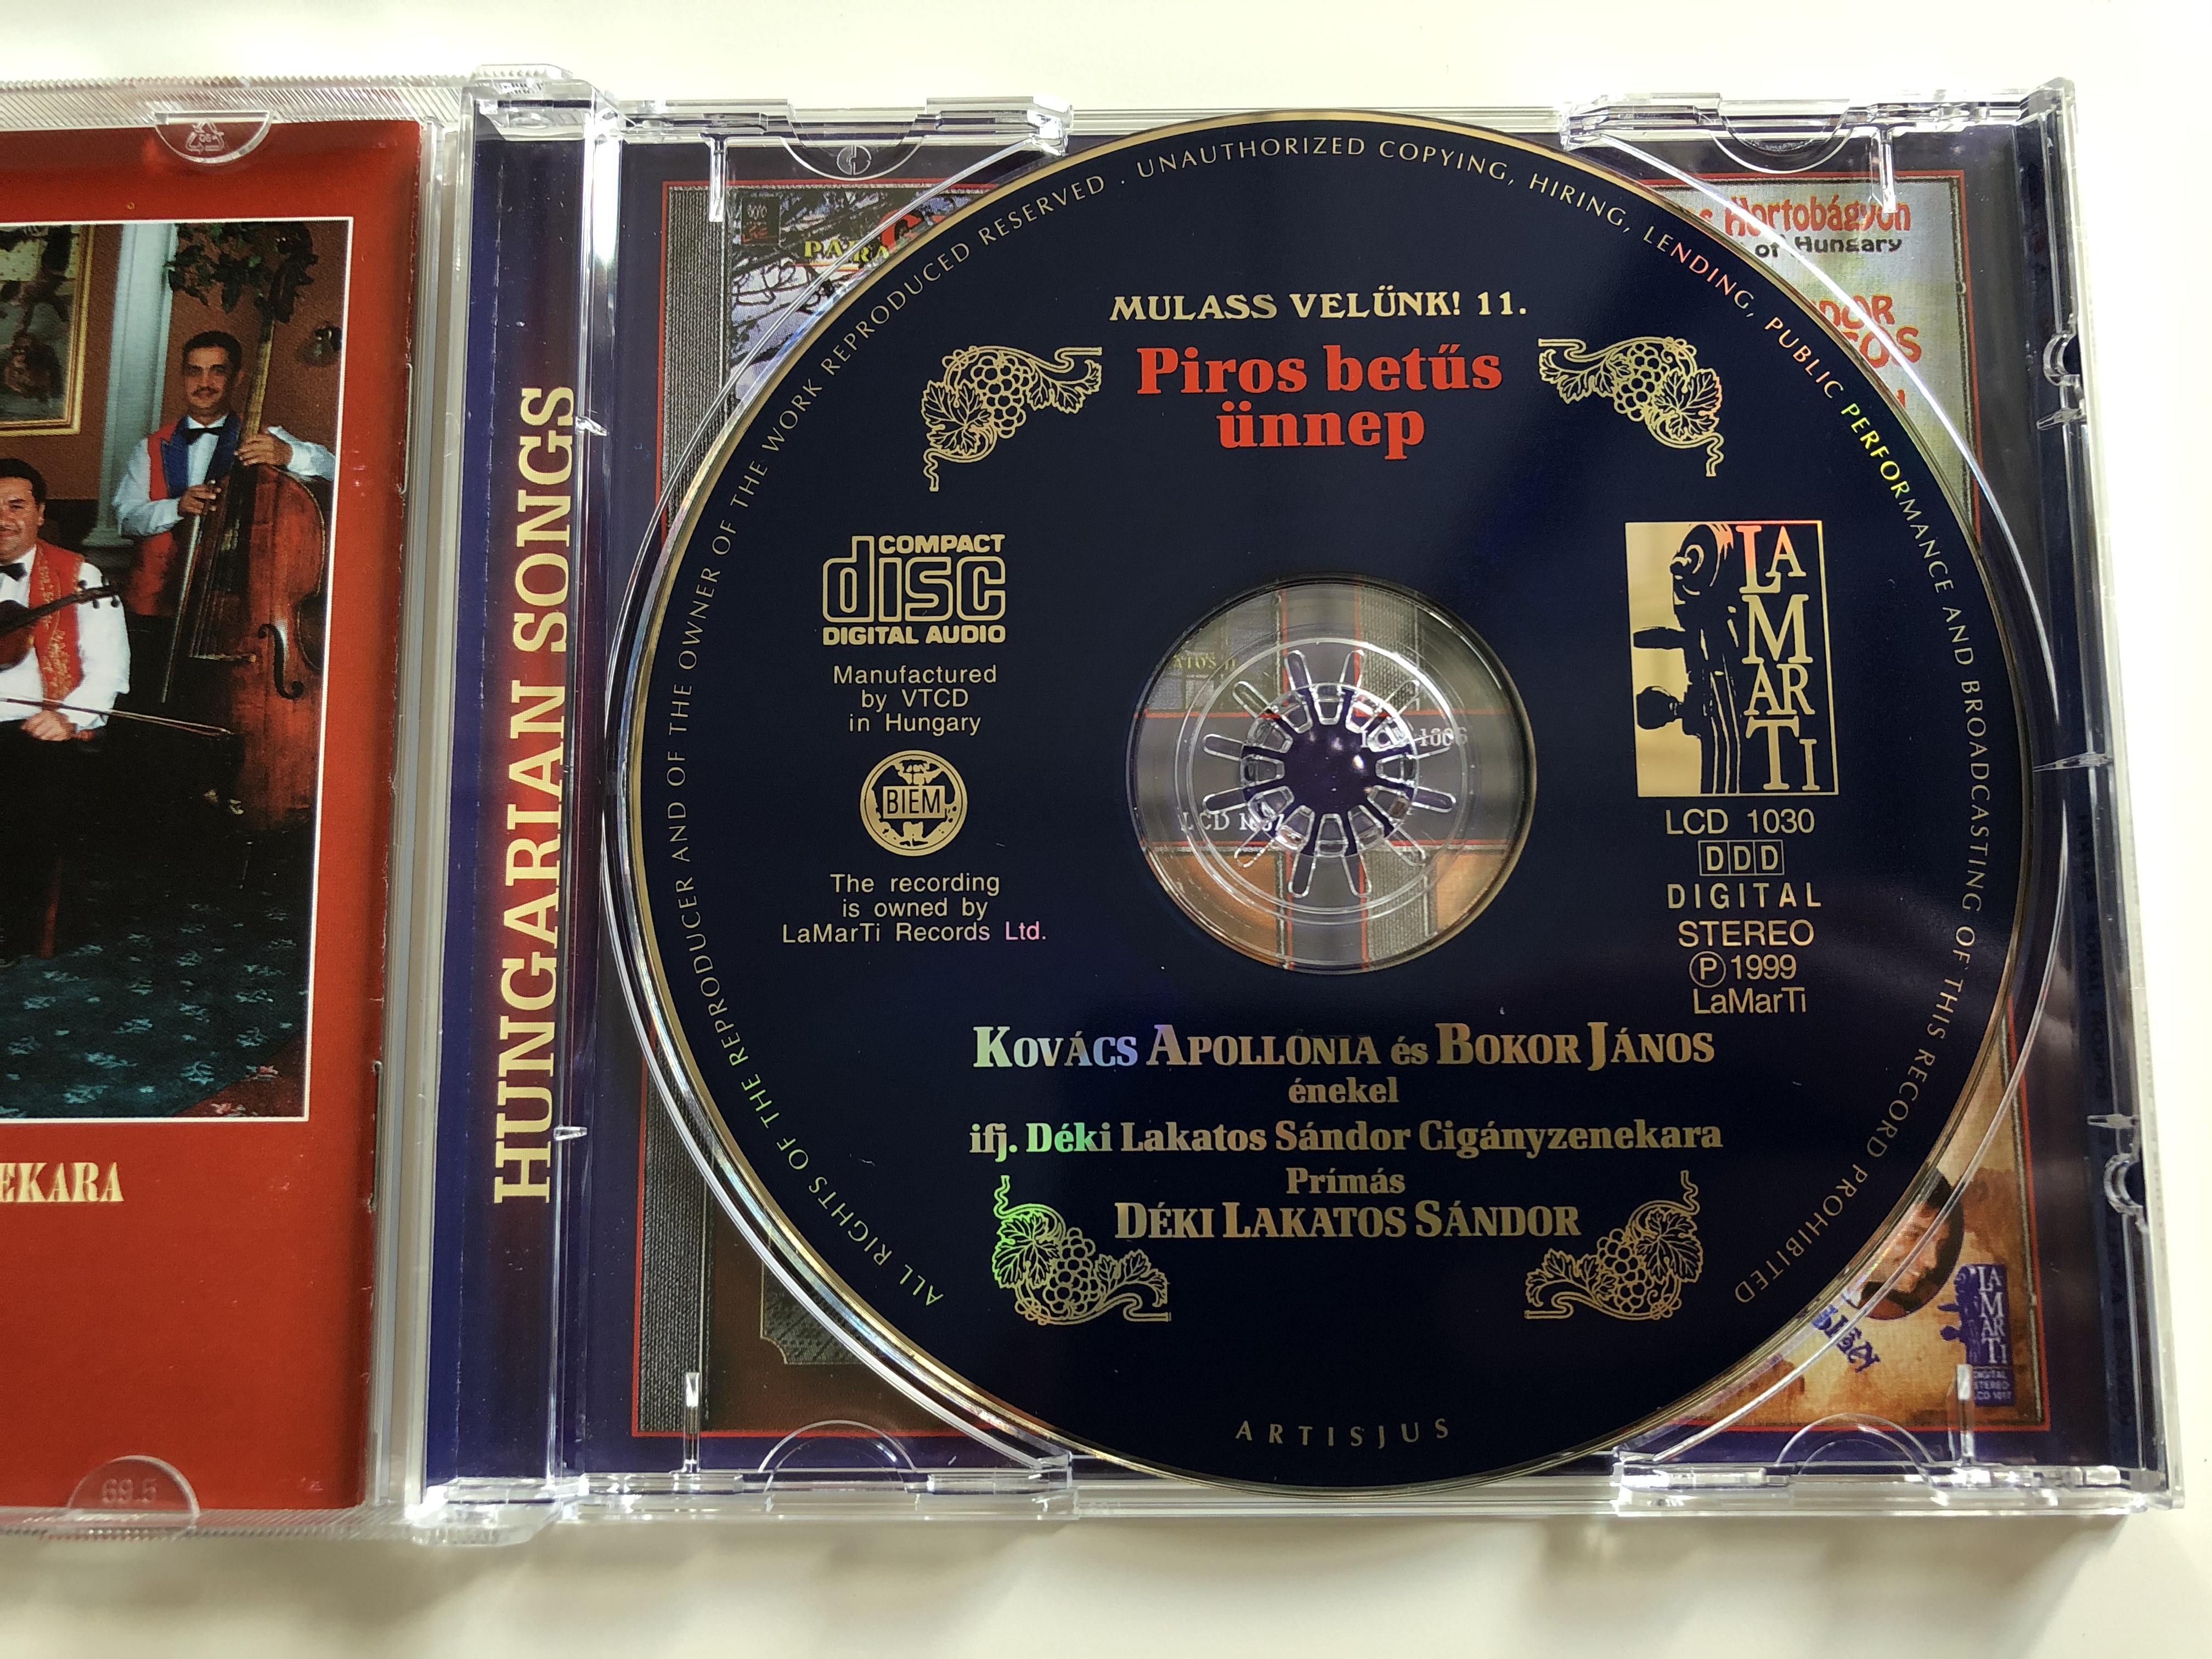 mulass-velunk-11.-piros-betus-unnep-bokor-janos-kovacs-apollonia-primas-deki-lakatos-sandor-lamarti-audio-cd-1999-stereo-lcd-1030-8-.jpg